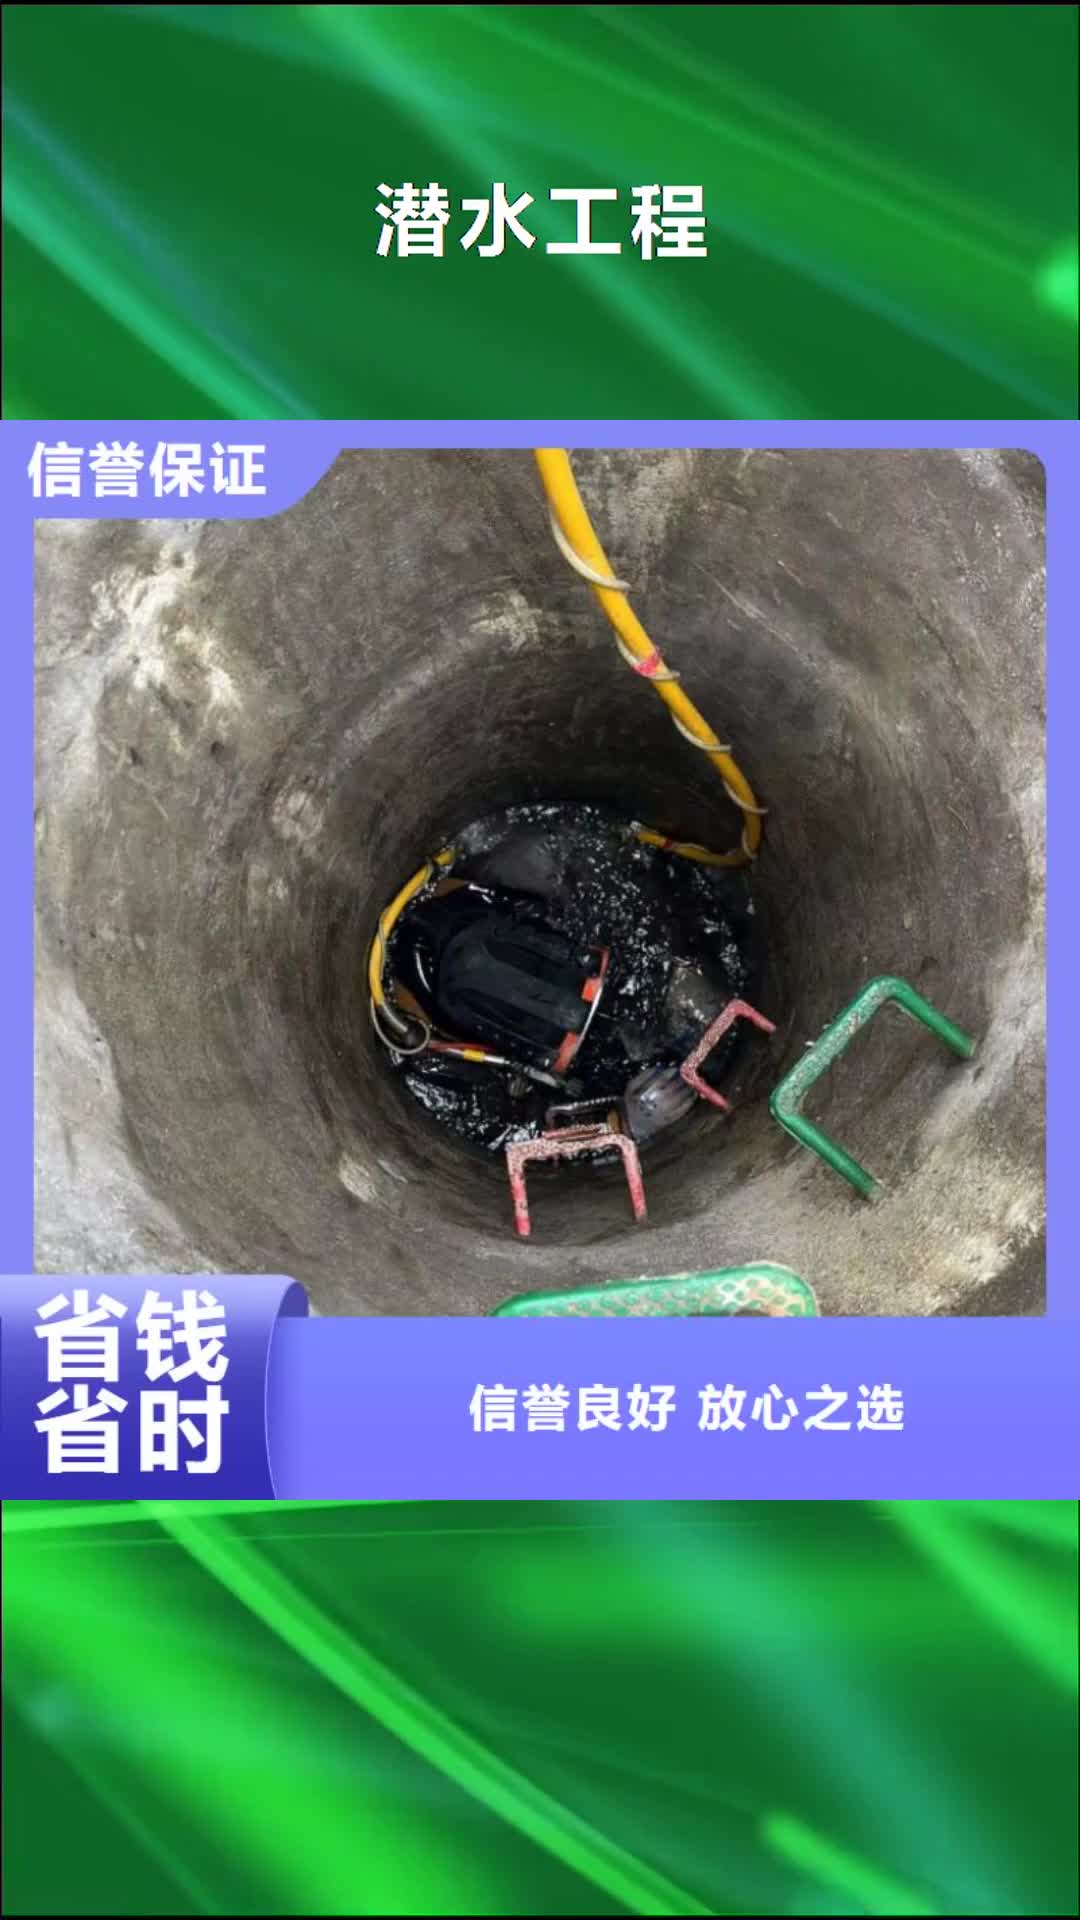 【本溪 潜水工程-水下拆除工程品质服务】